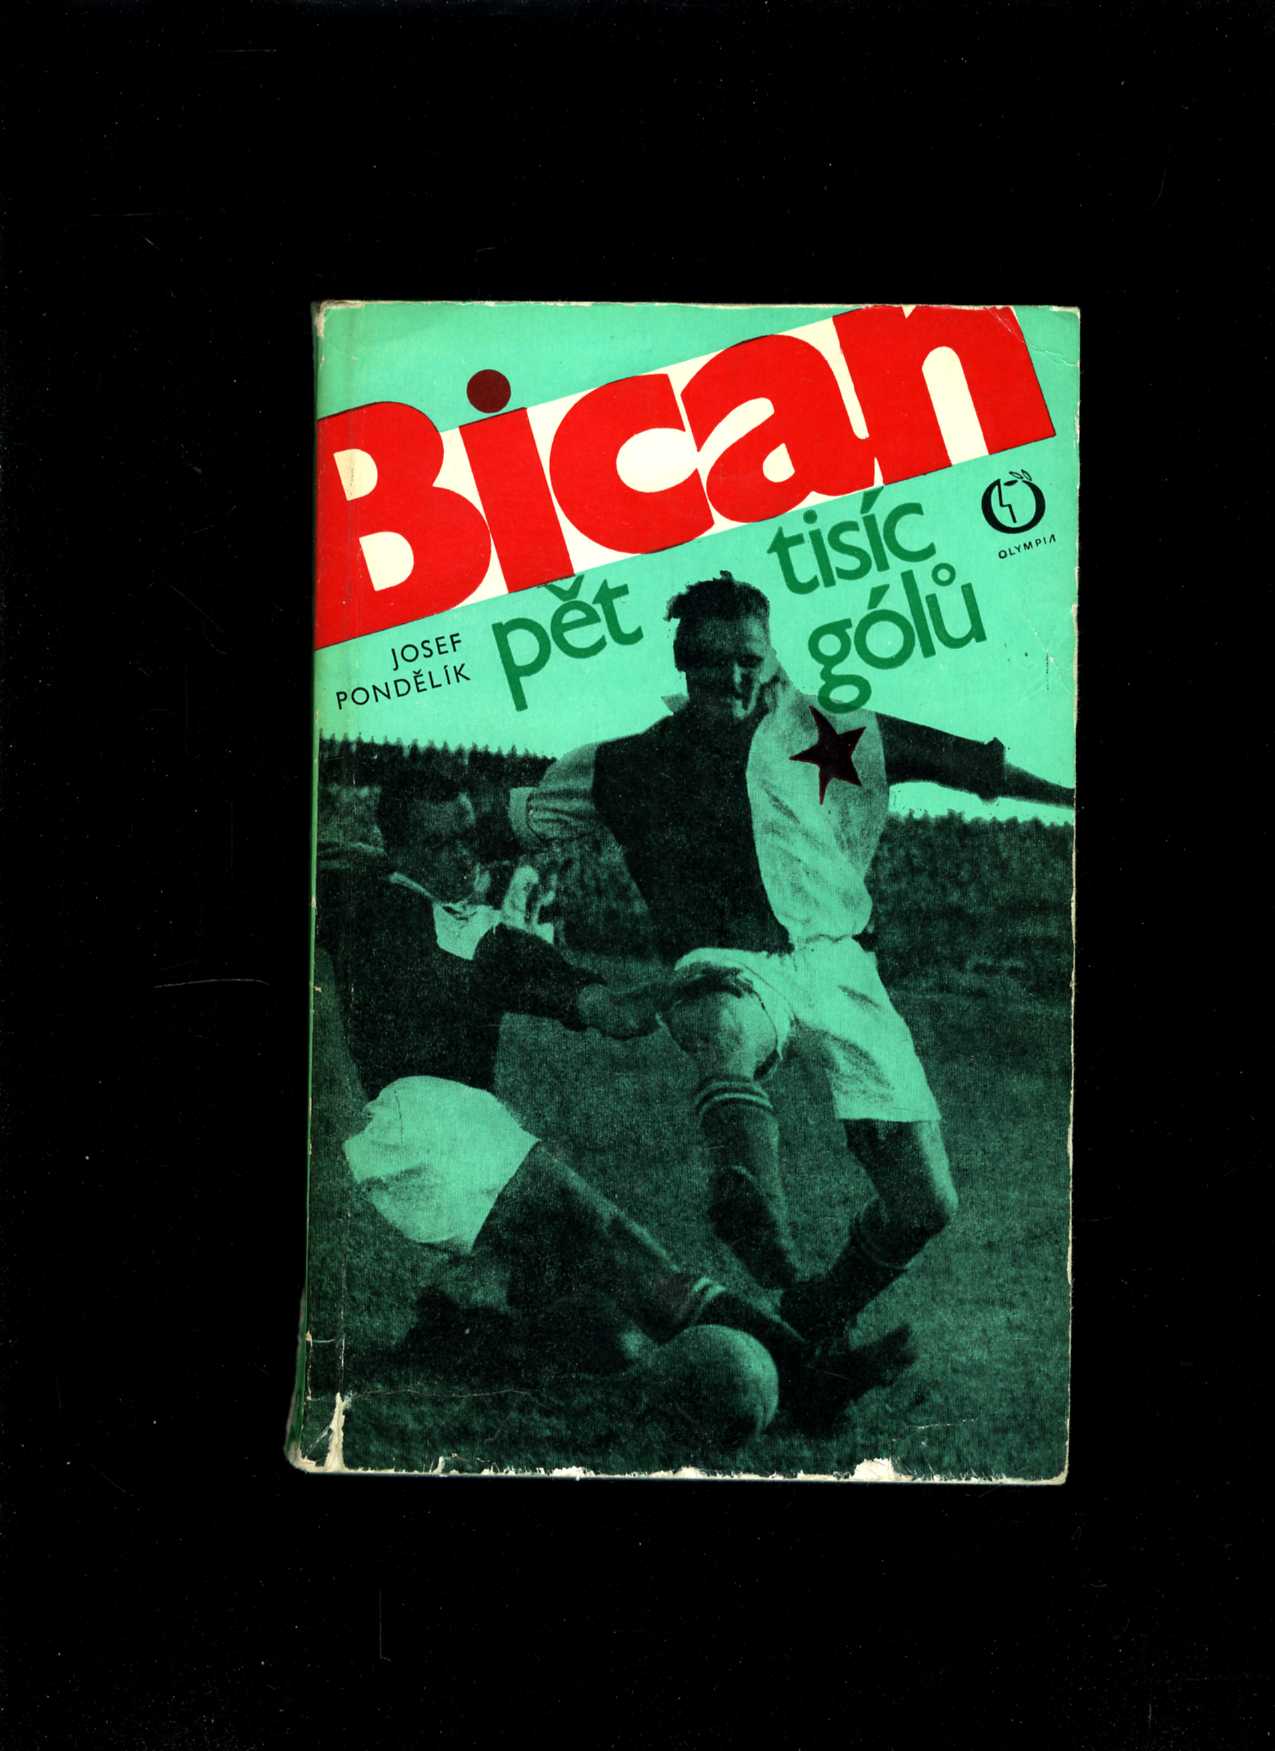 Bican –⁠ pět tisíc gólů (Josef Pondělík)